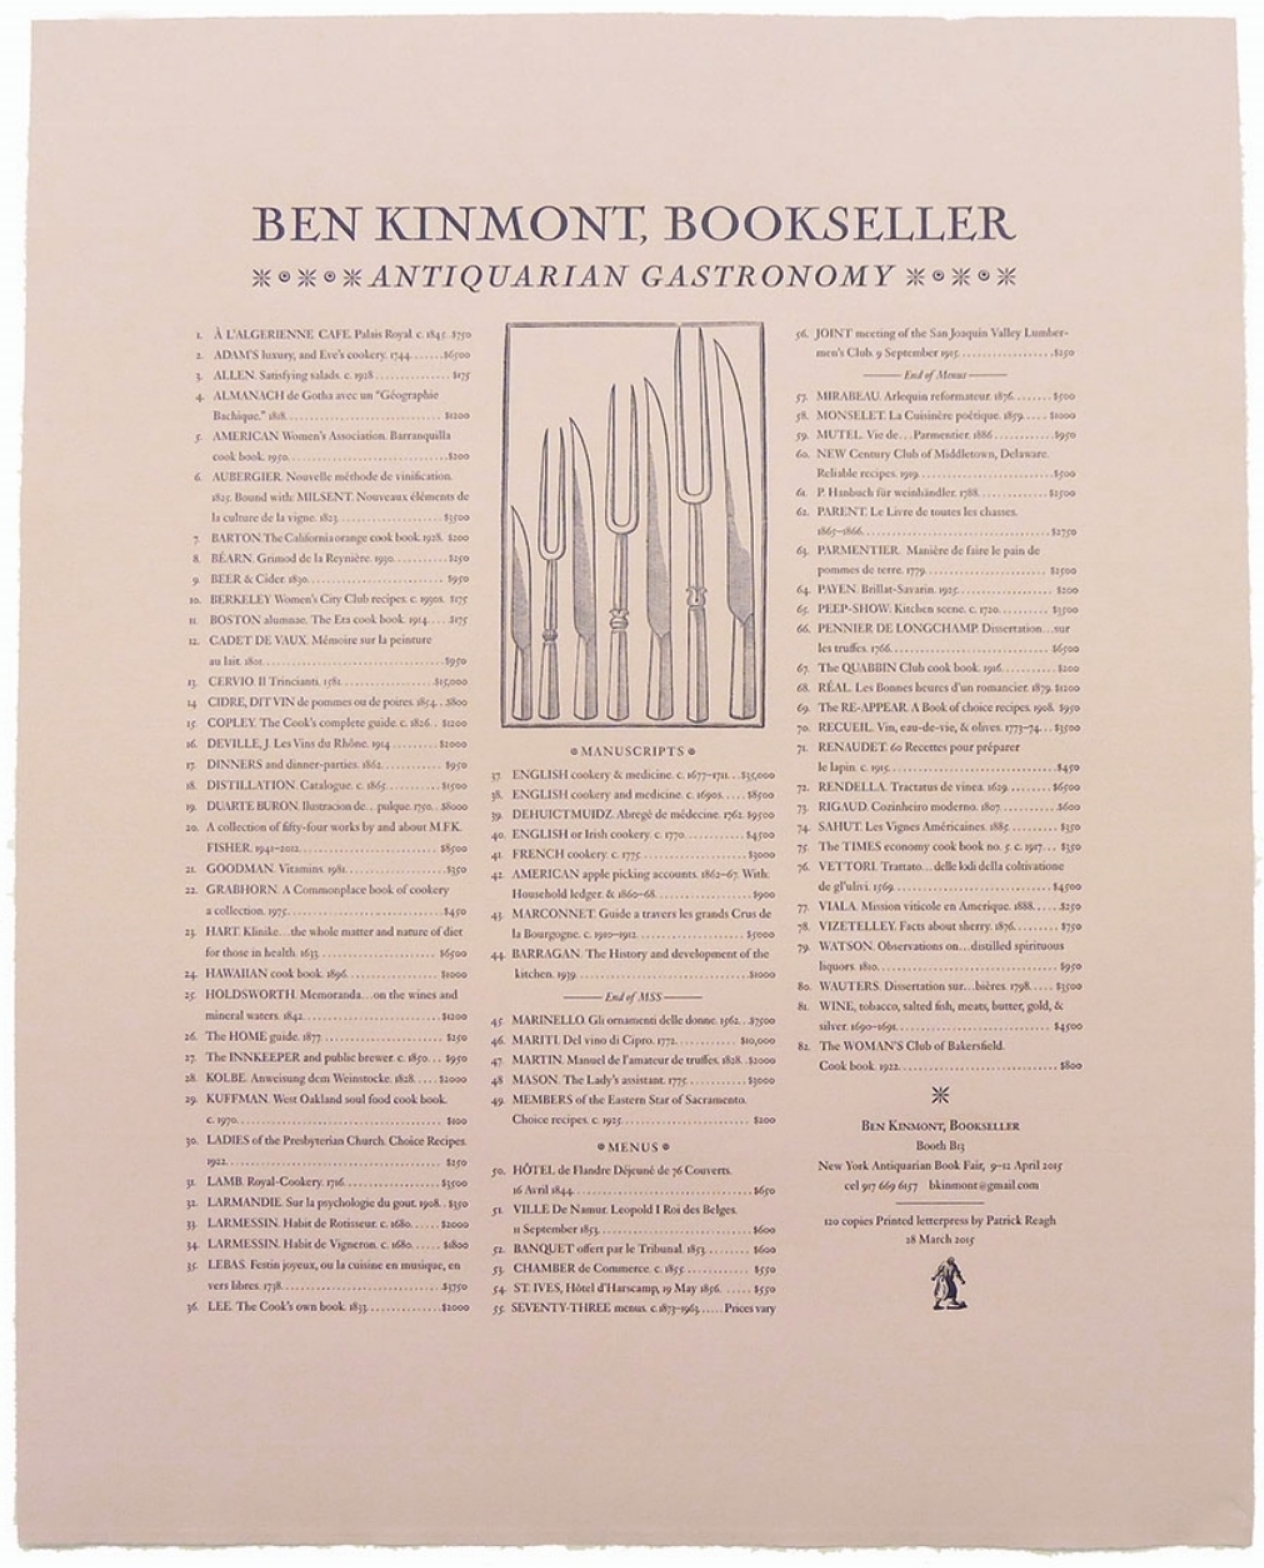 Broadside for Ben Kinmont Bookseller